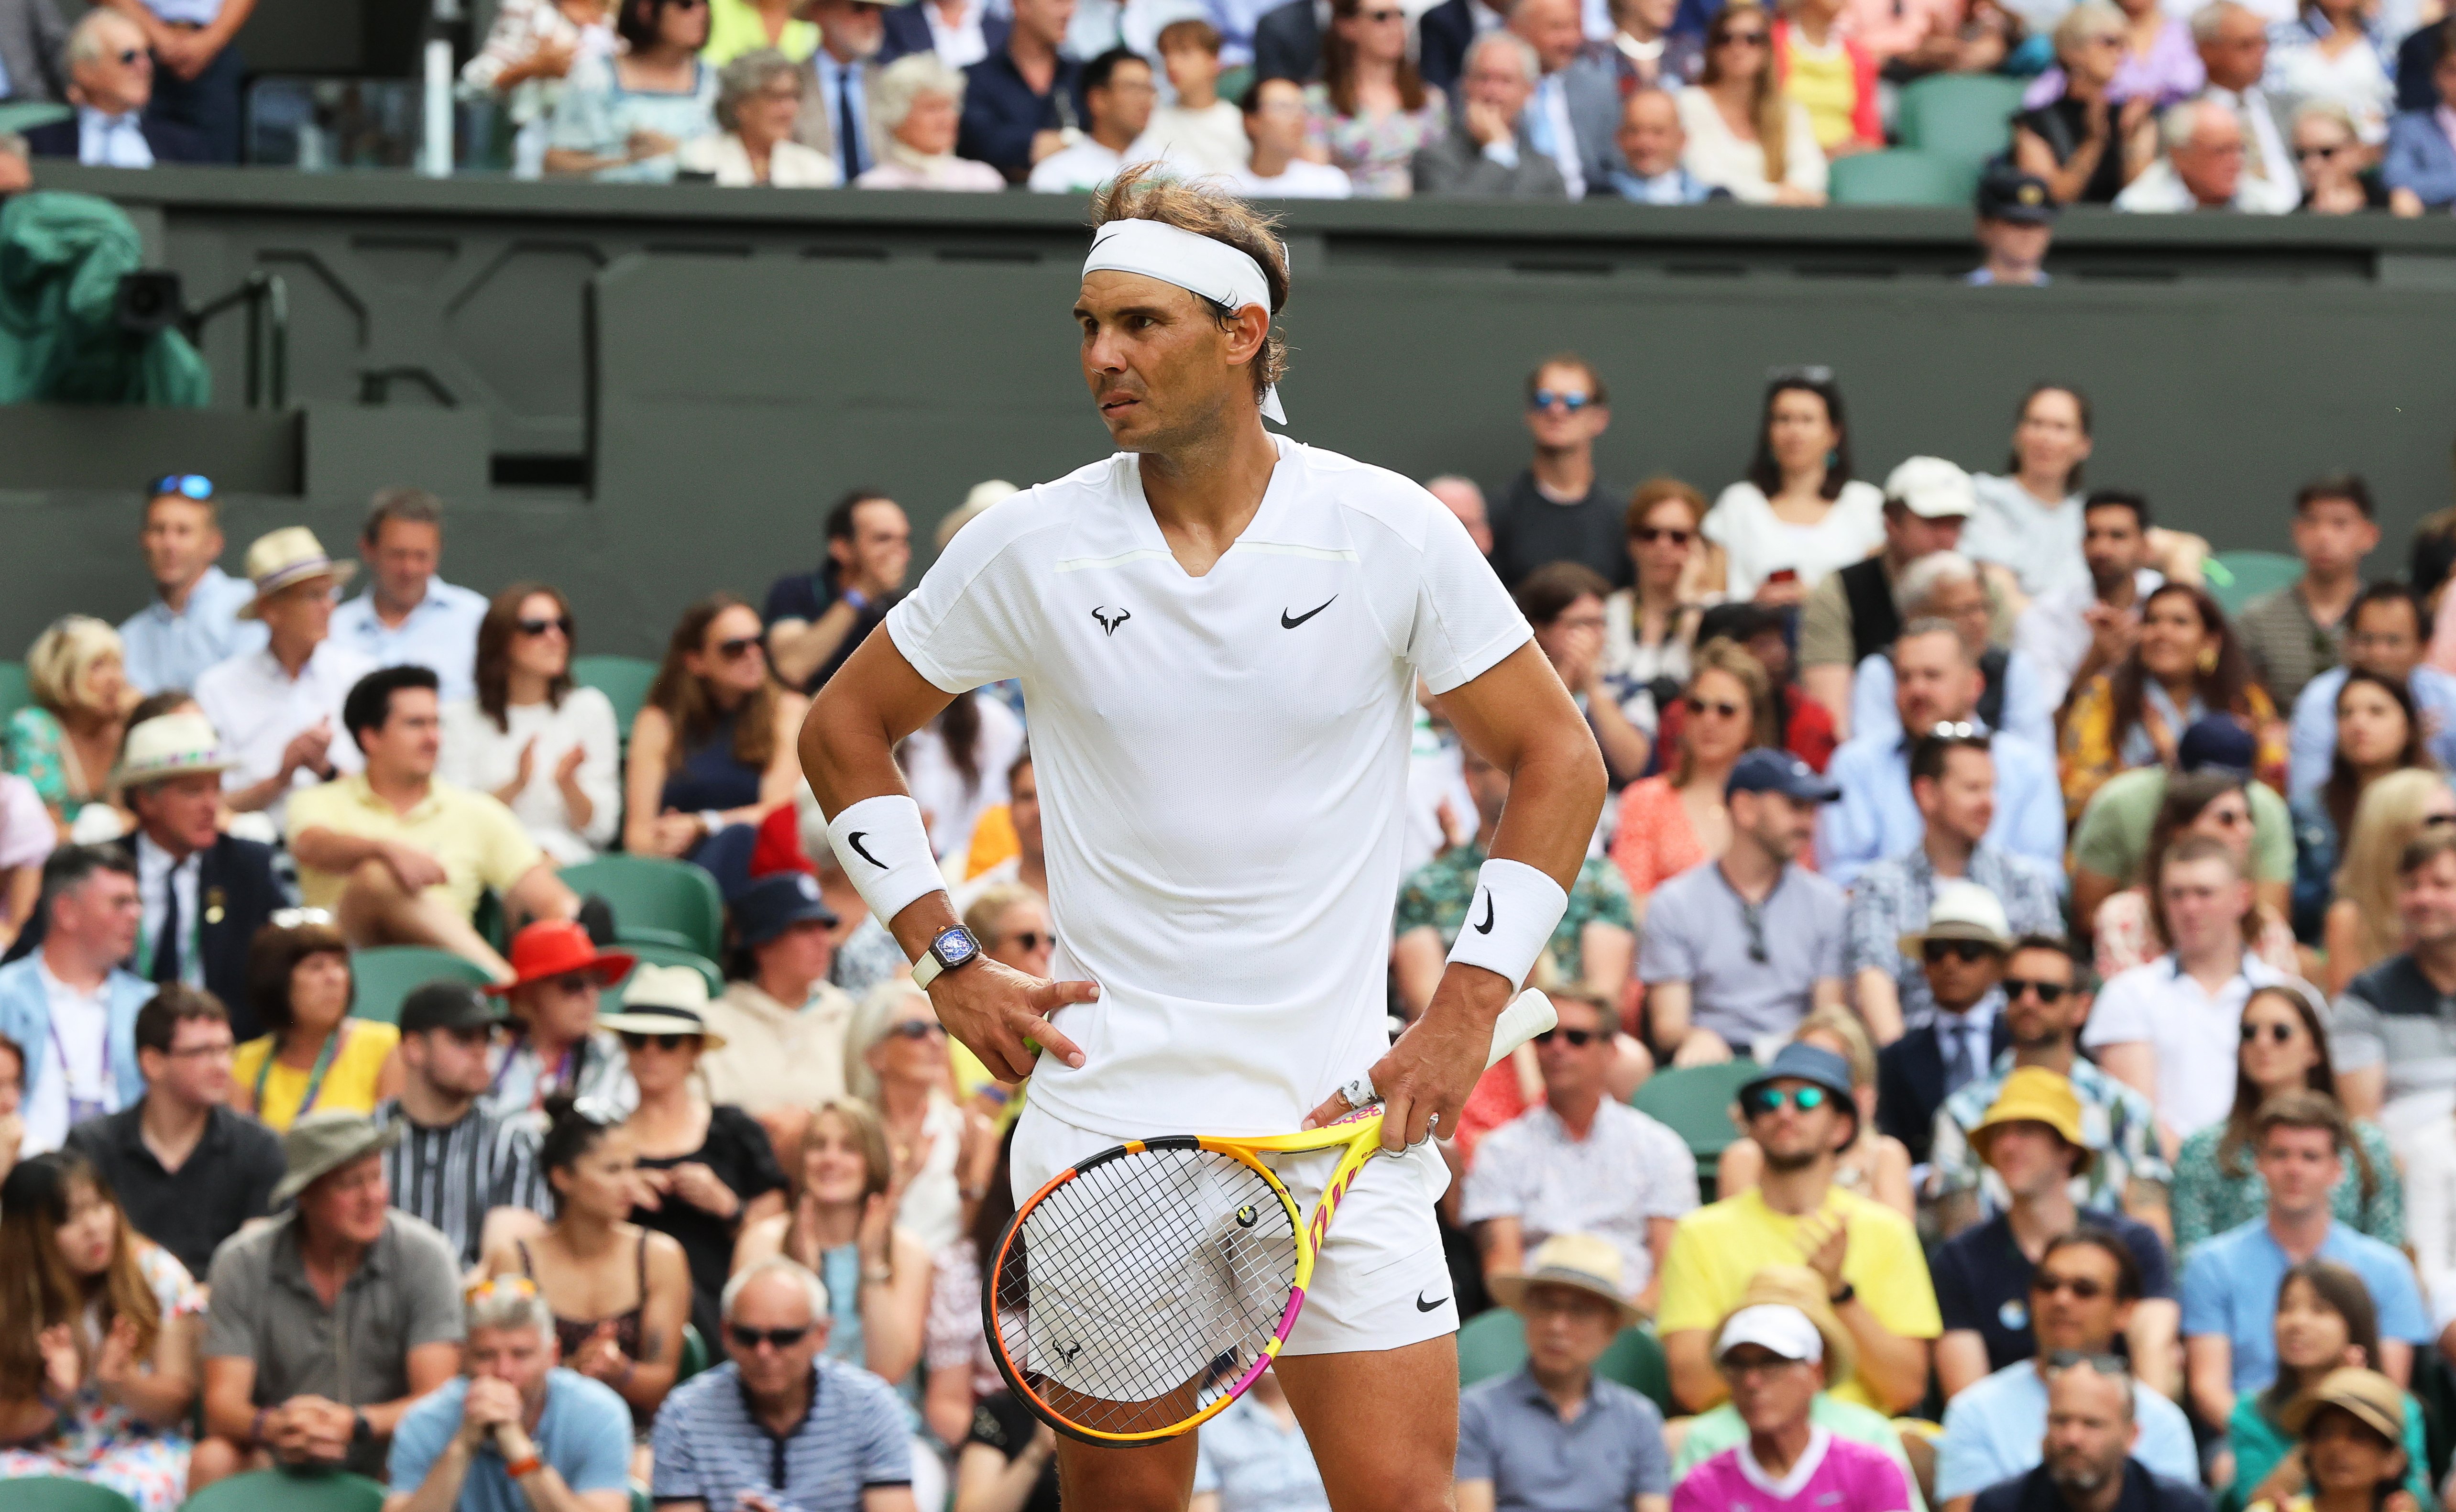 Rafa Nadal es retira de Wimbledon per la lesió abdominal: "No té sentit seguir competint així"